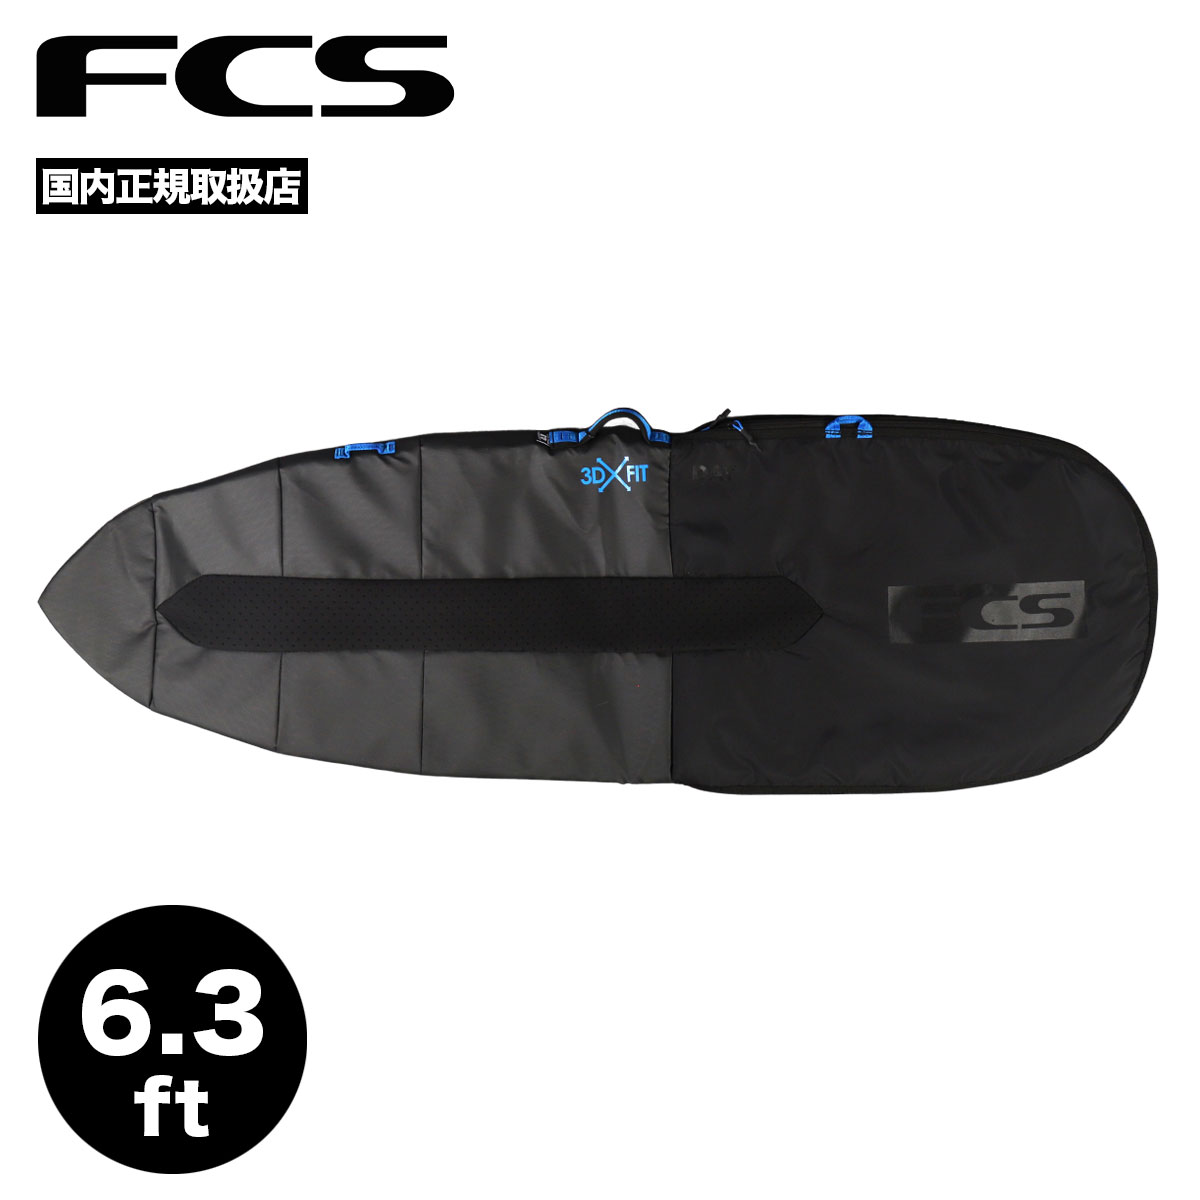 FCS エフシーエス サーフィン ハードケース 6.3 デイ ファンボード 